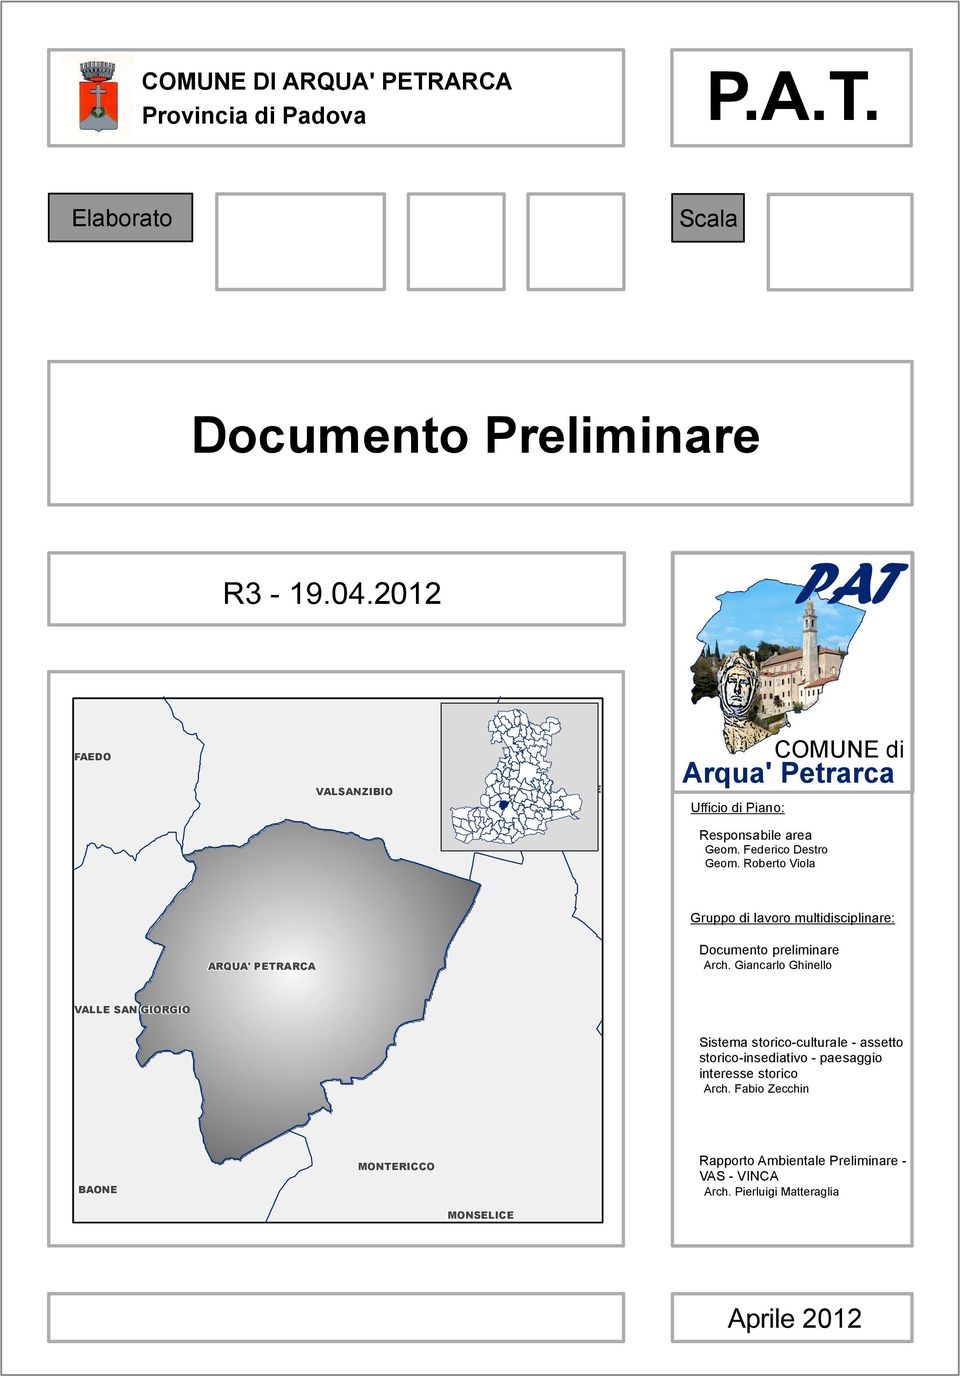 Roberto Viola Gruppo di lavoro multidisciplinare: ARQUA' PETRARCA Documento preliminare Arch.